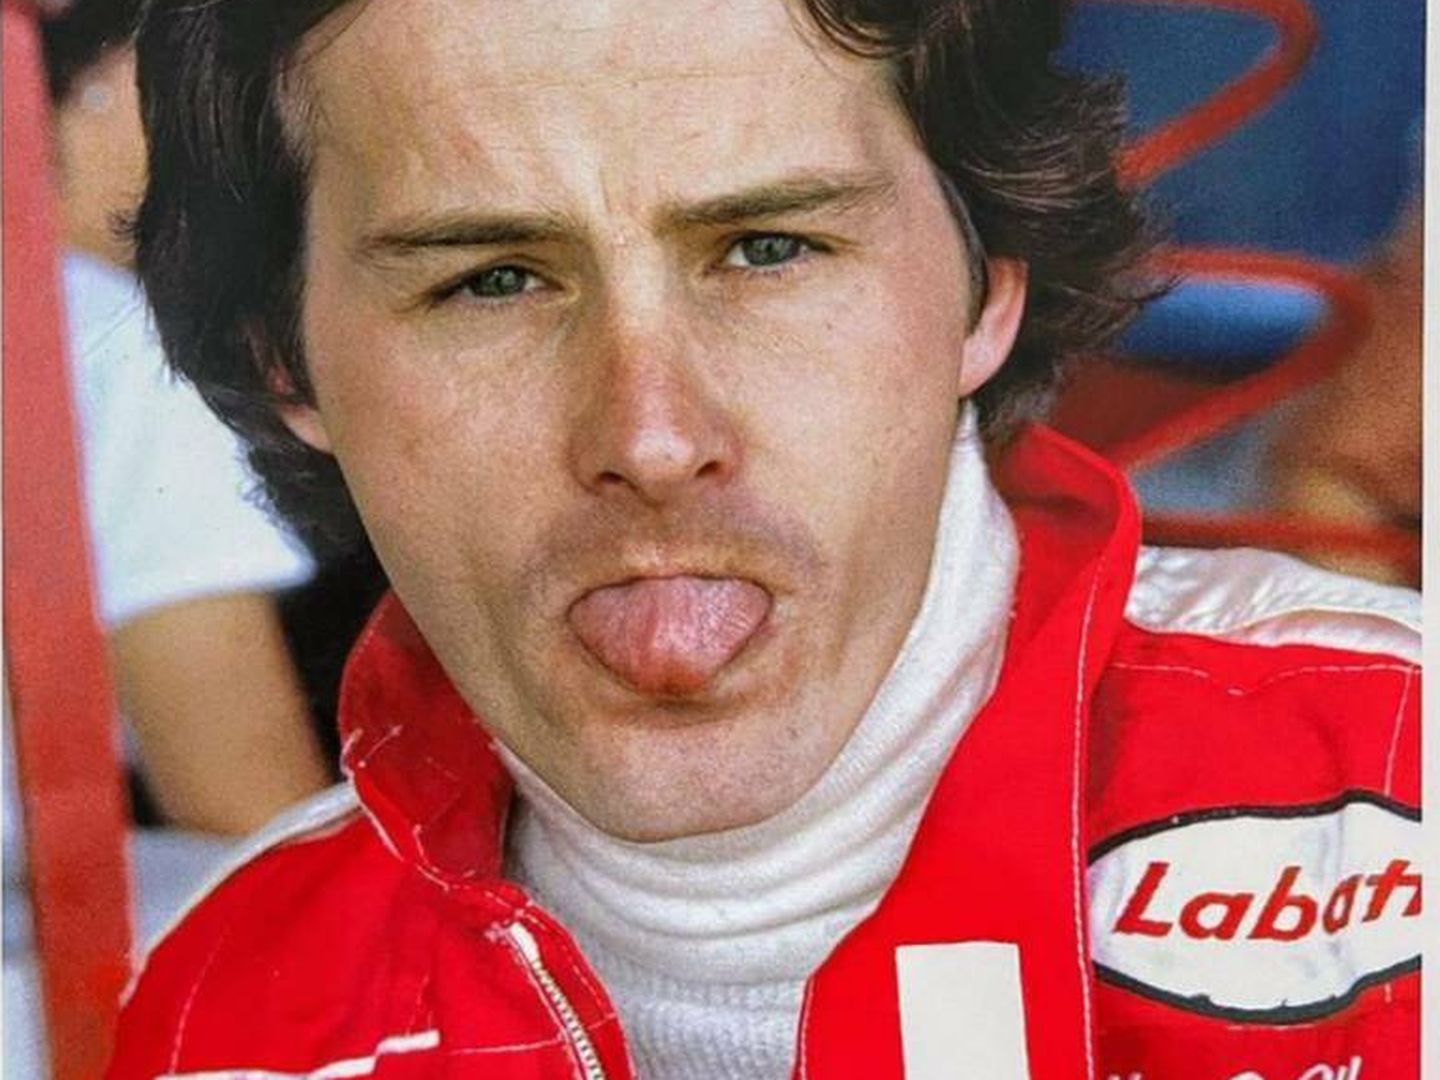 Gilles Villeneuve fue y todavía es considerado uno de los pilotos más carismáticos y espectaculares de la historia. Falleció en el Gp de Bélgica de 1982